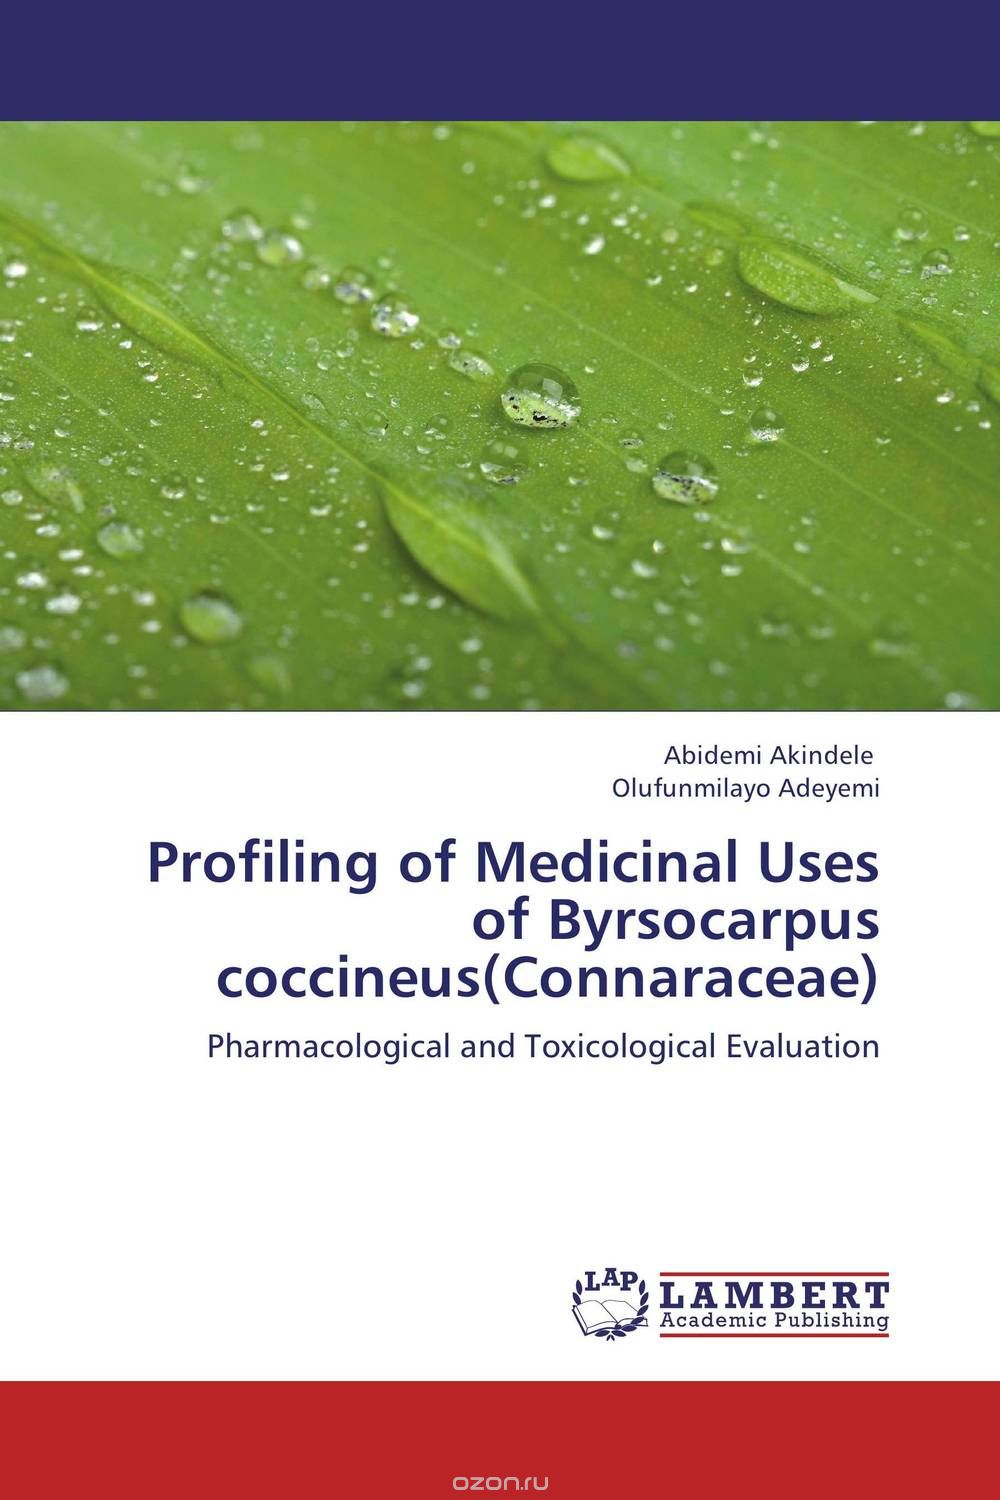 Скачать книгу "Profiling of Medicinal Uses of Byrsocarpus coccineus(Connaraceae)"